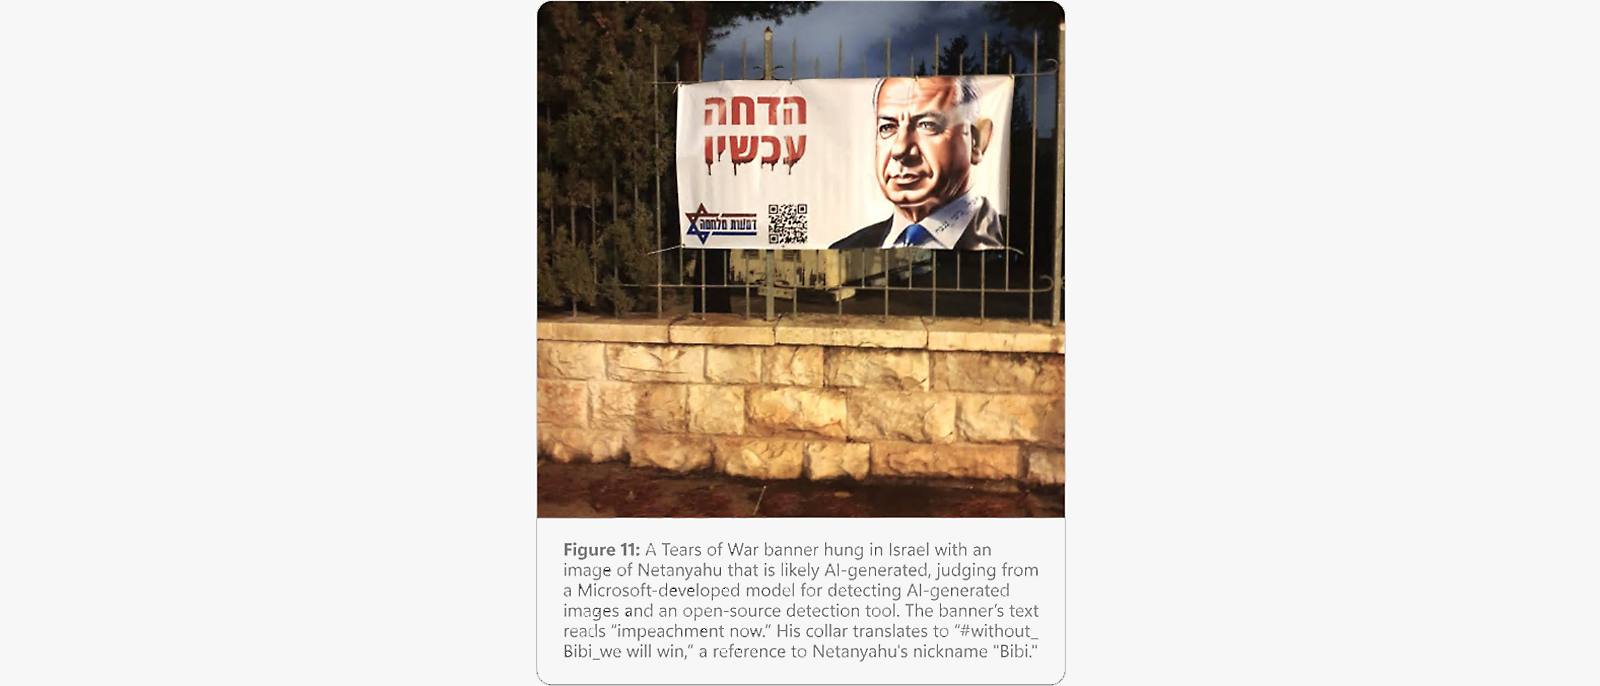 11. attēls: Tears of War reklāmkarogs Izraēlā ar mākslīgā intelekta ģenerētu Netanjahu attēlu un tekstu “Impeachment now” (impīčments tagad).